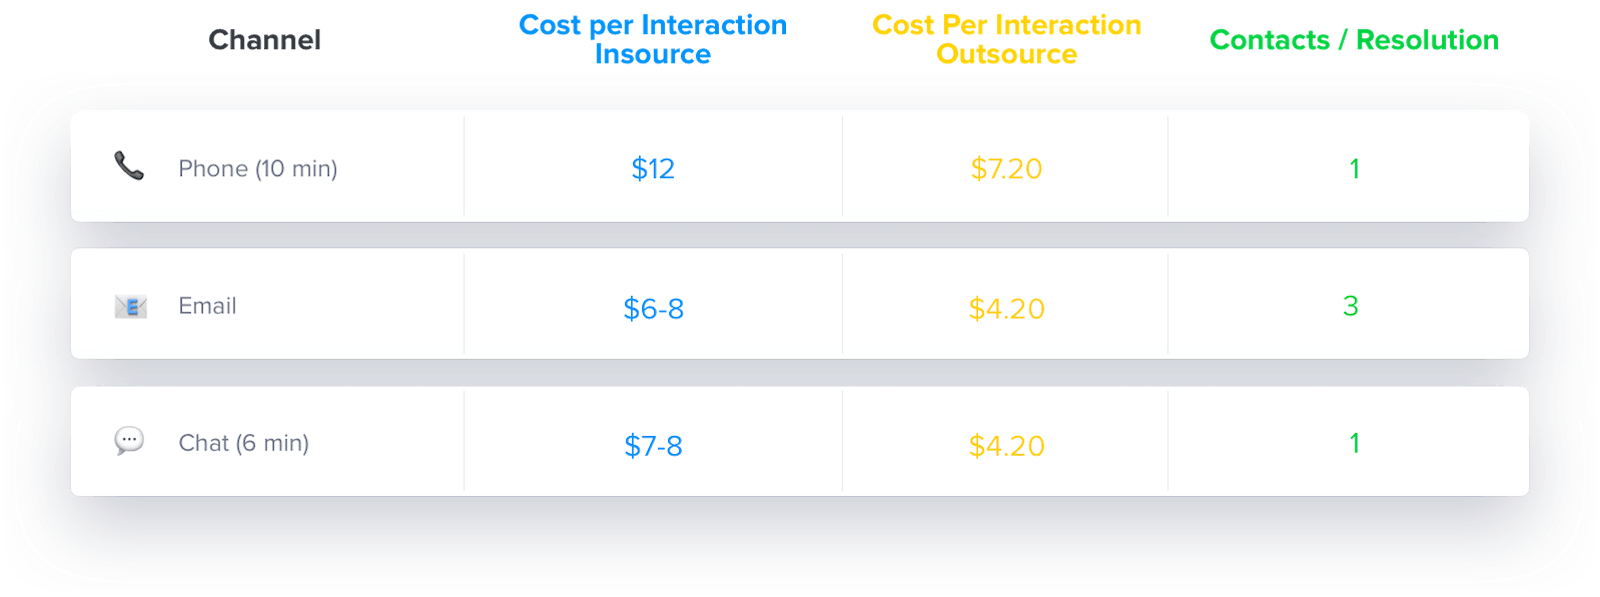 Cost per contact